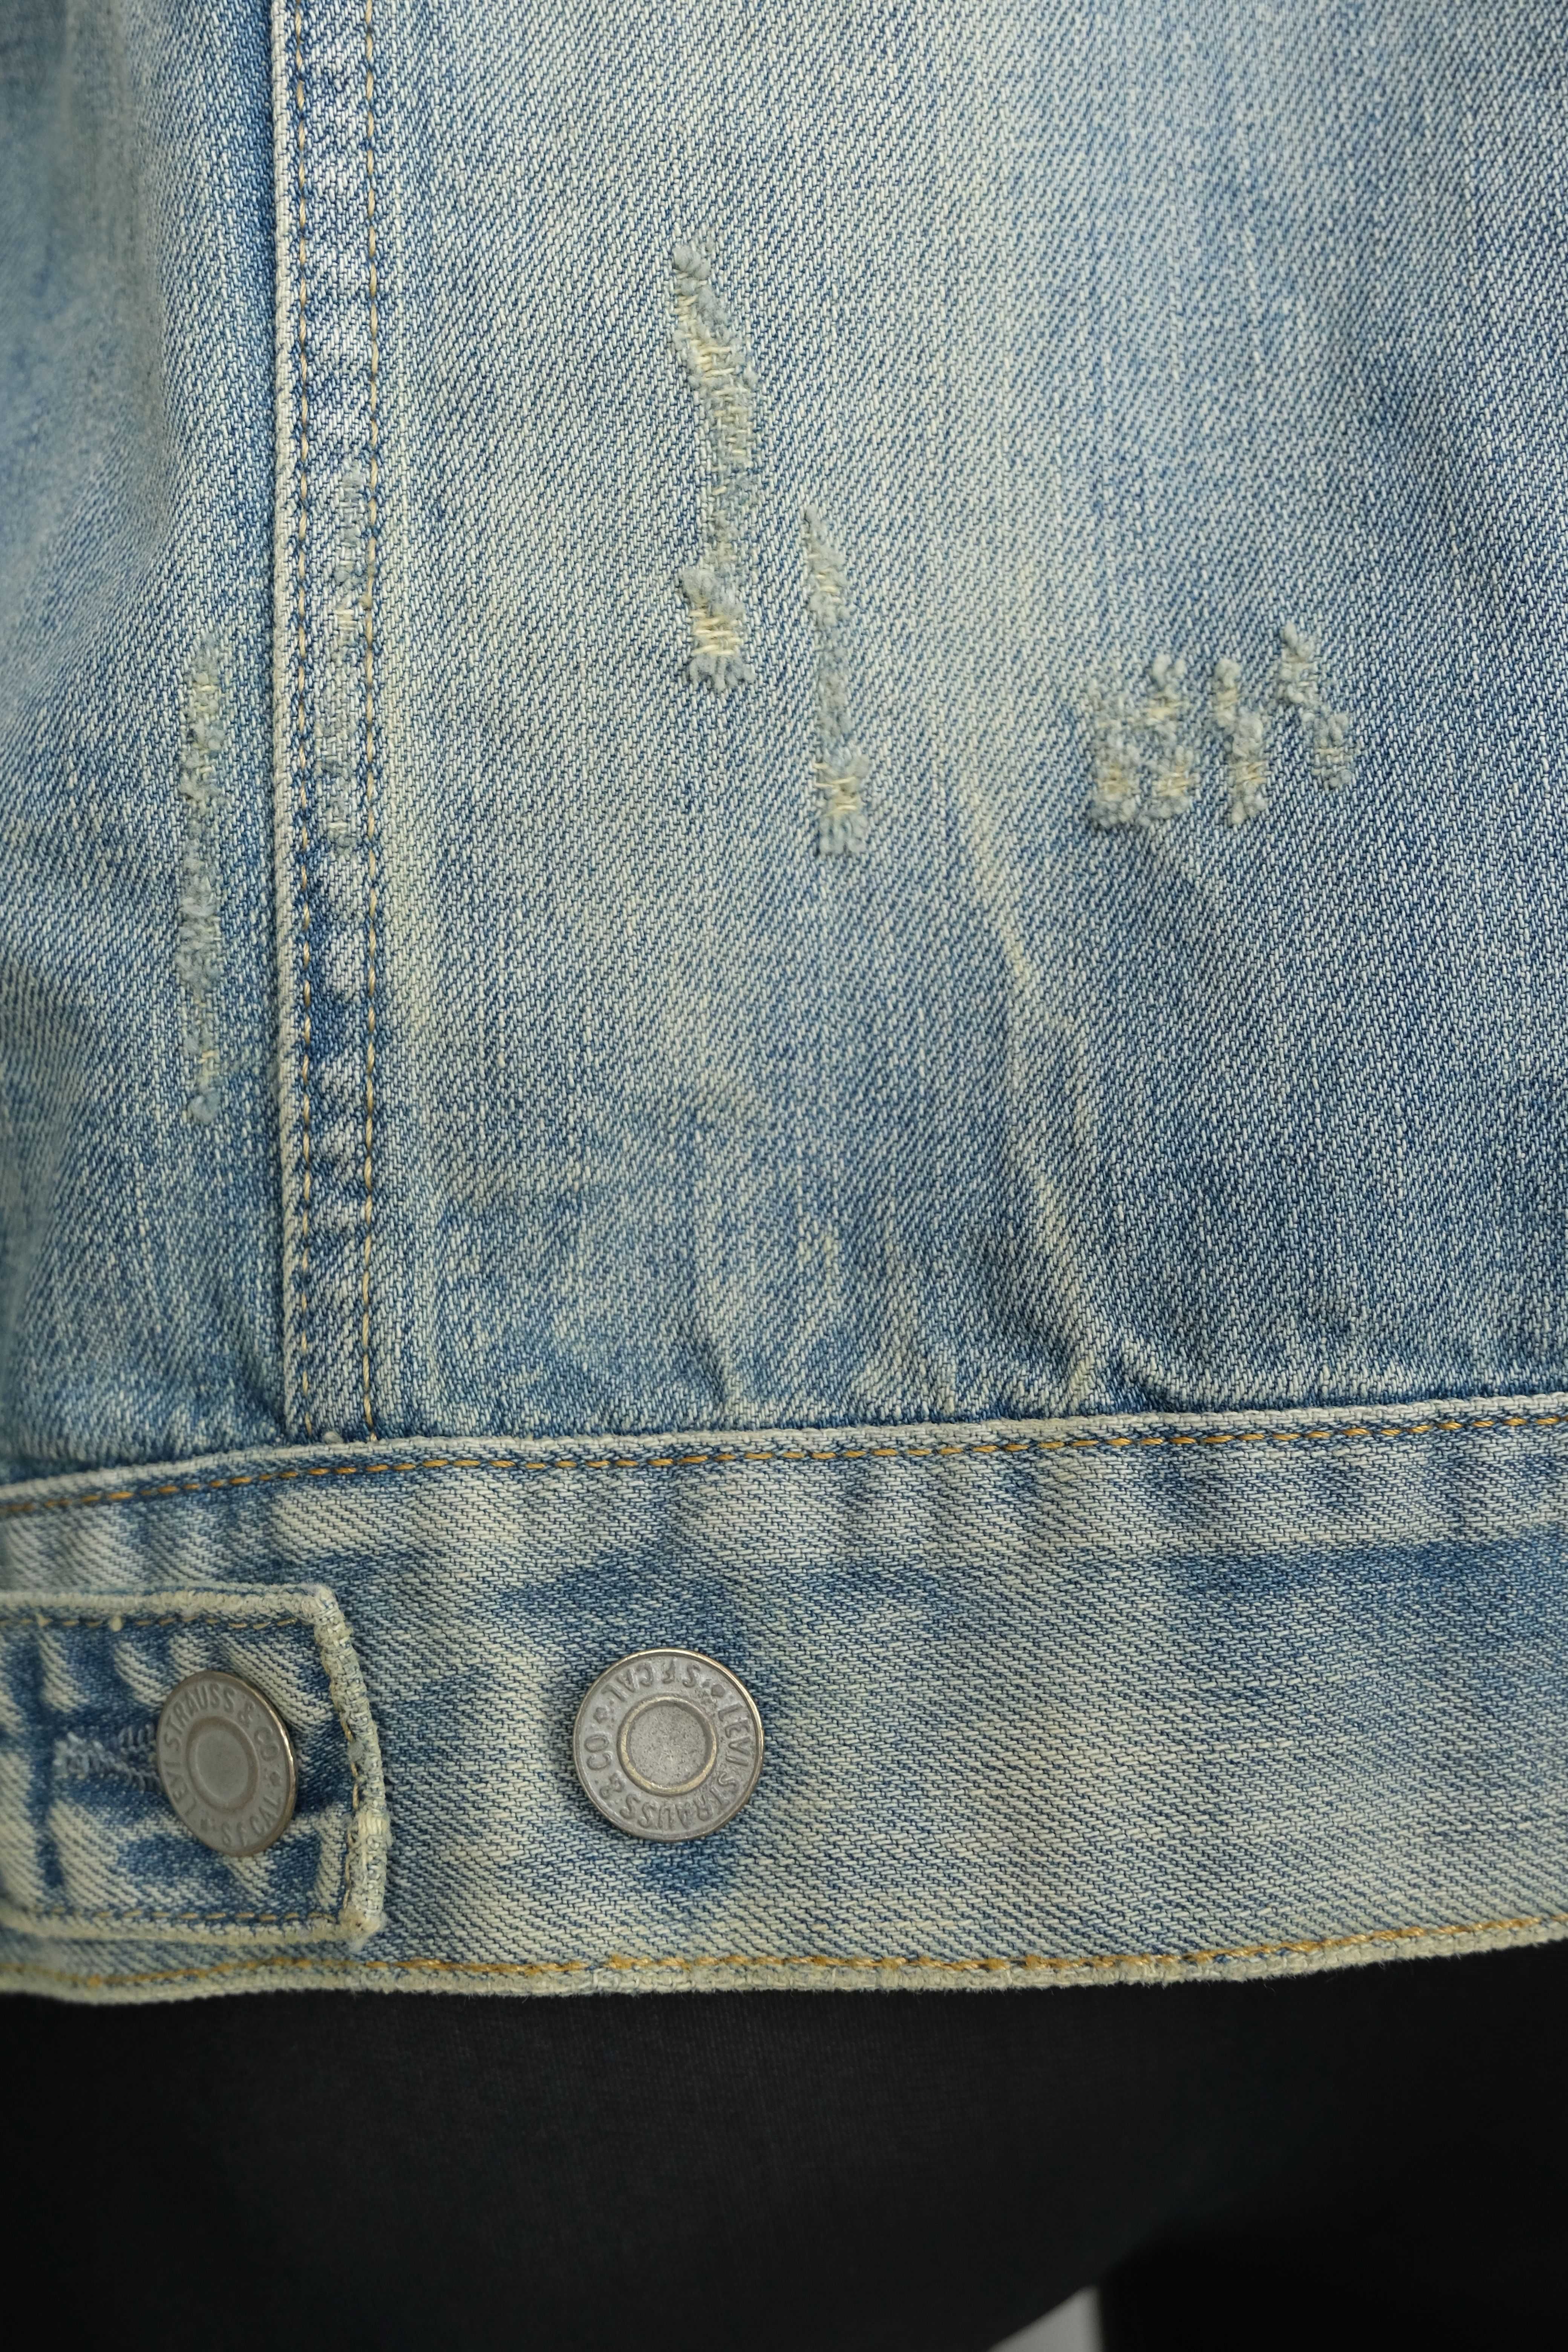 Levi's jeansowa vintage męska r XL